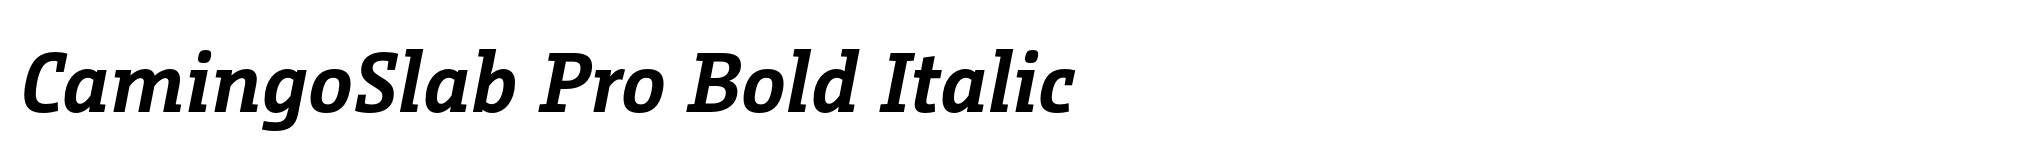 CamingoSlab Pro Bold Italic image